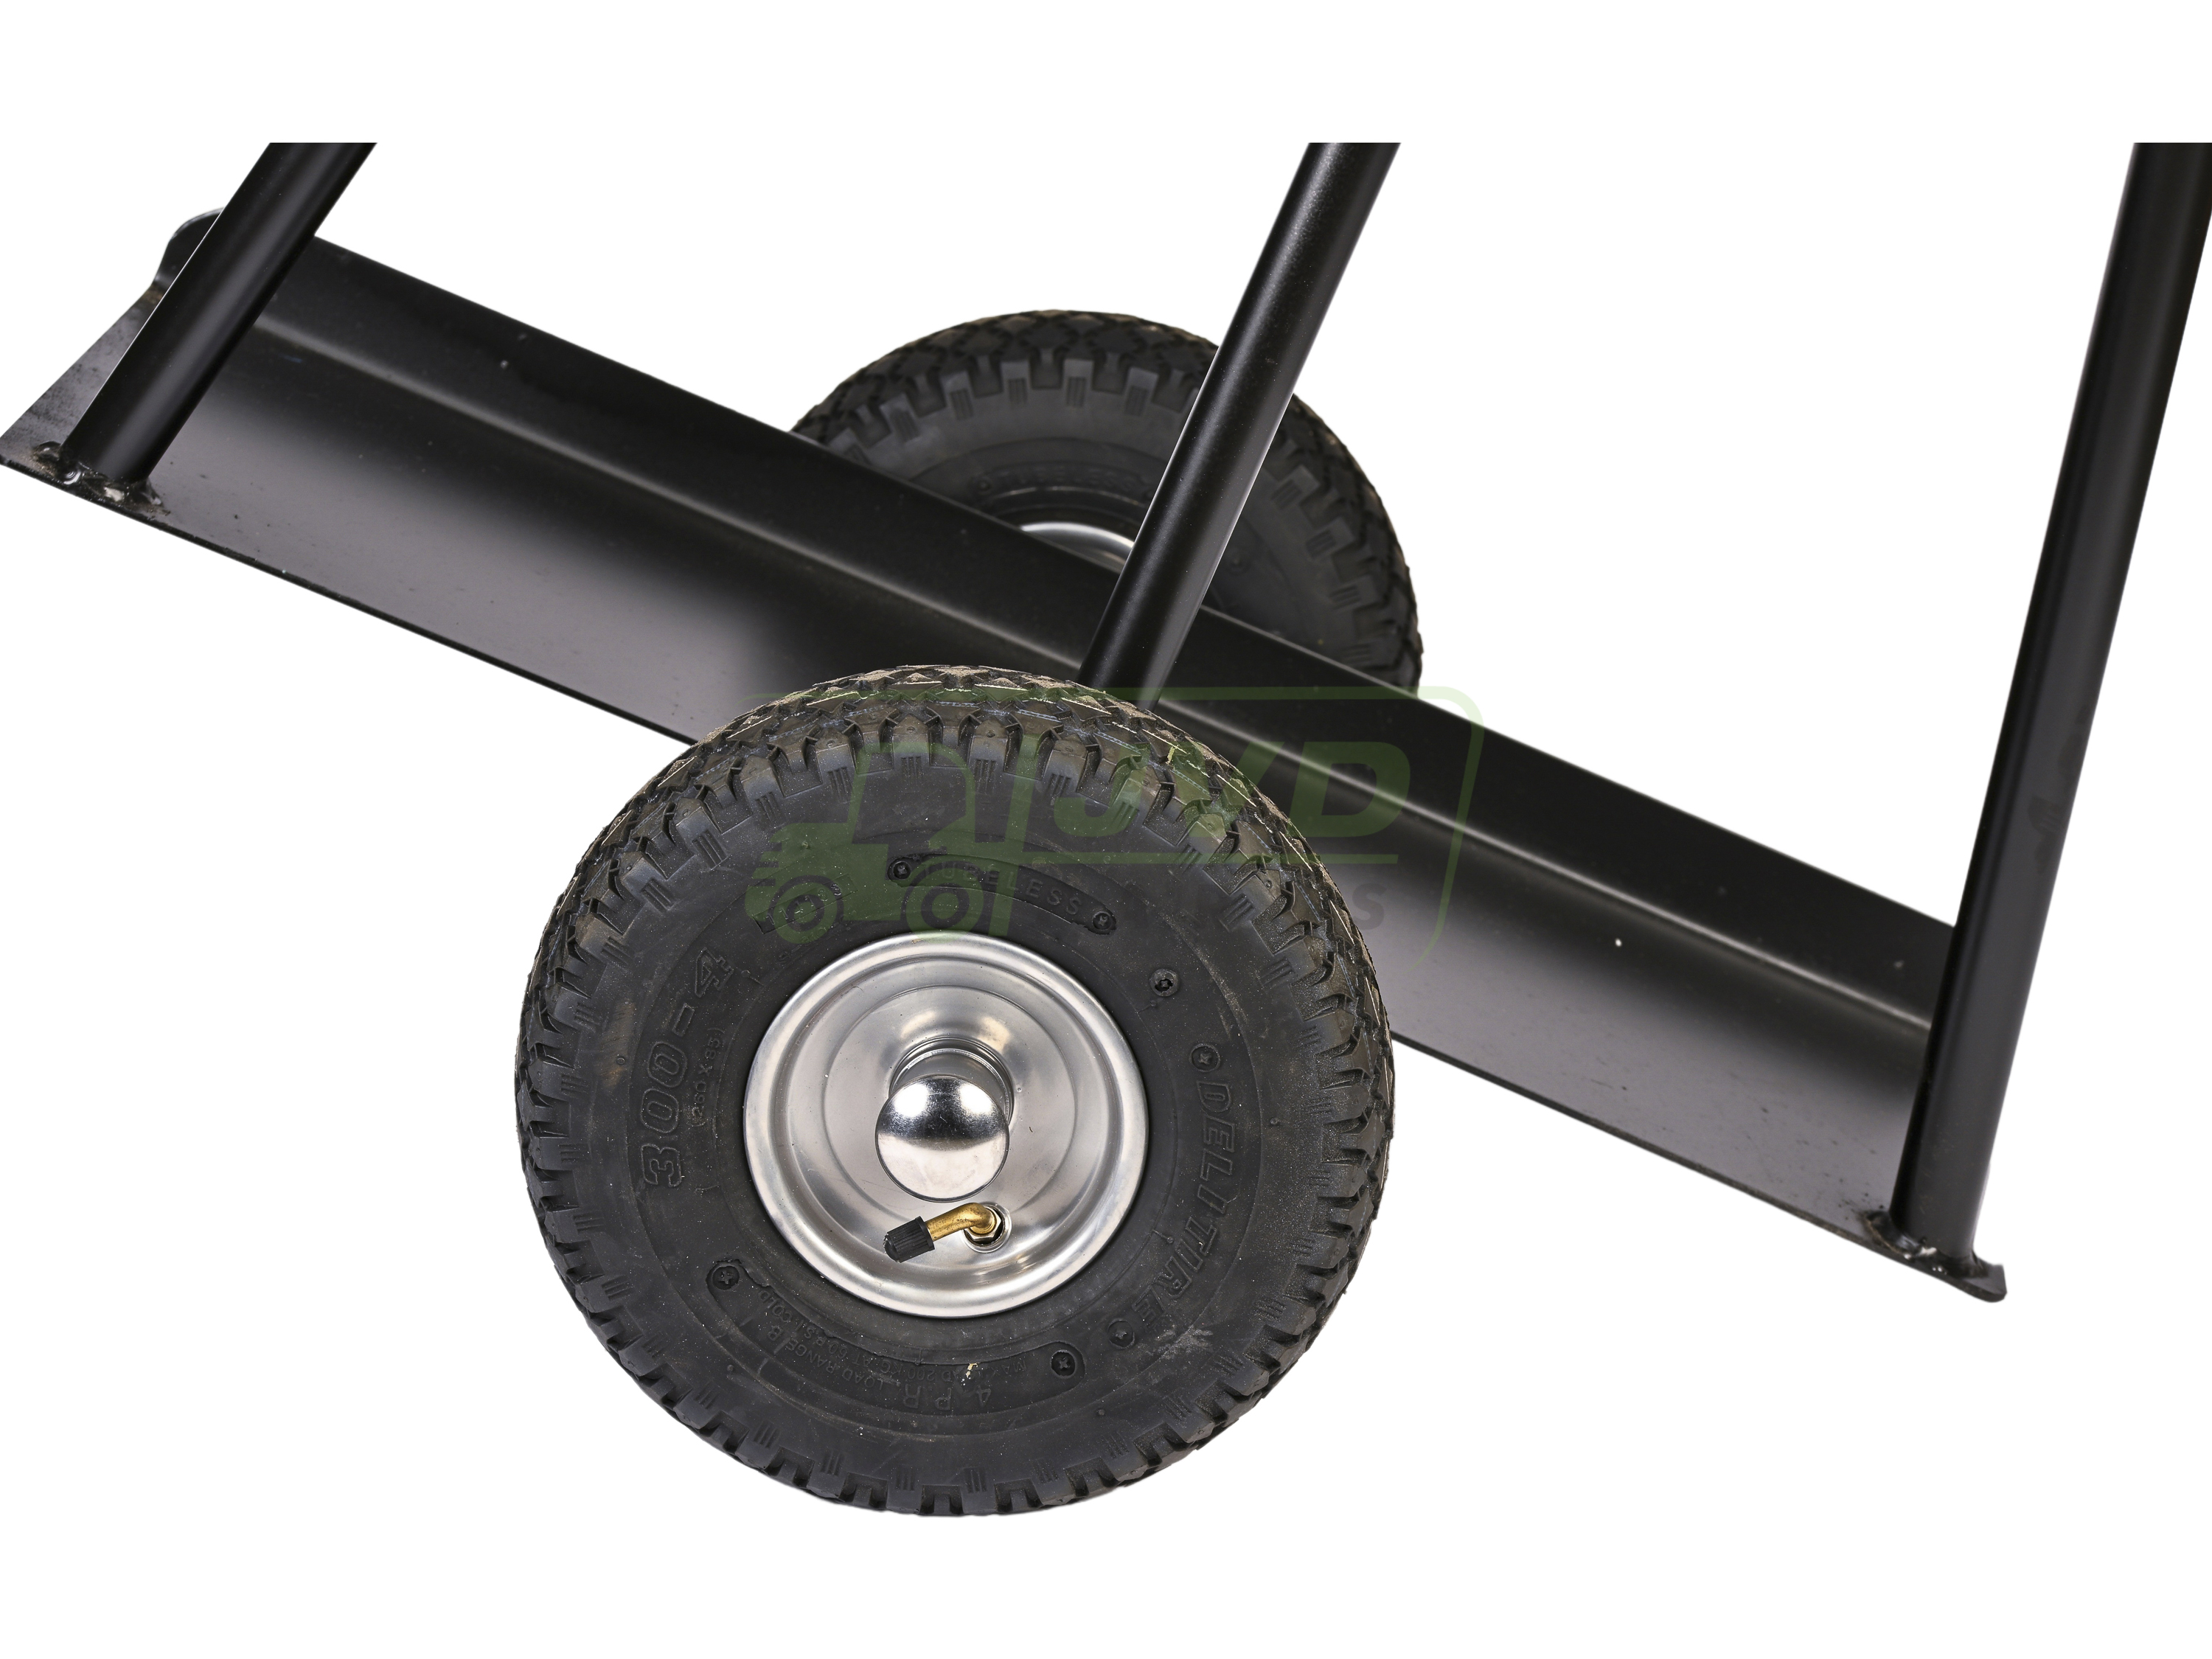 Wózki do materiałów arkuszowych z oponami pneumatycznymi, Platforma 700x270mm 